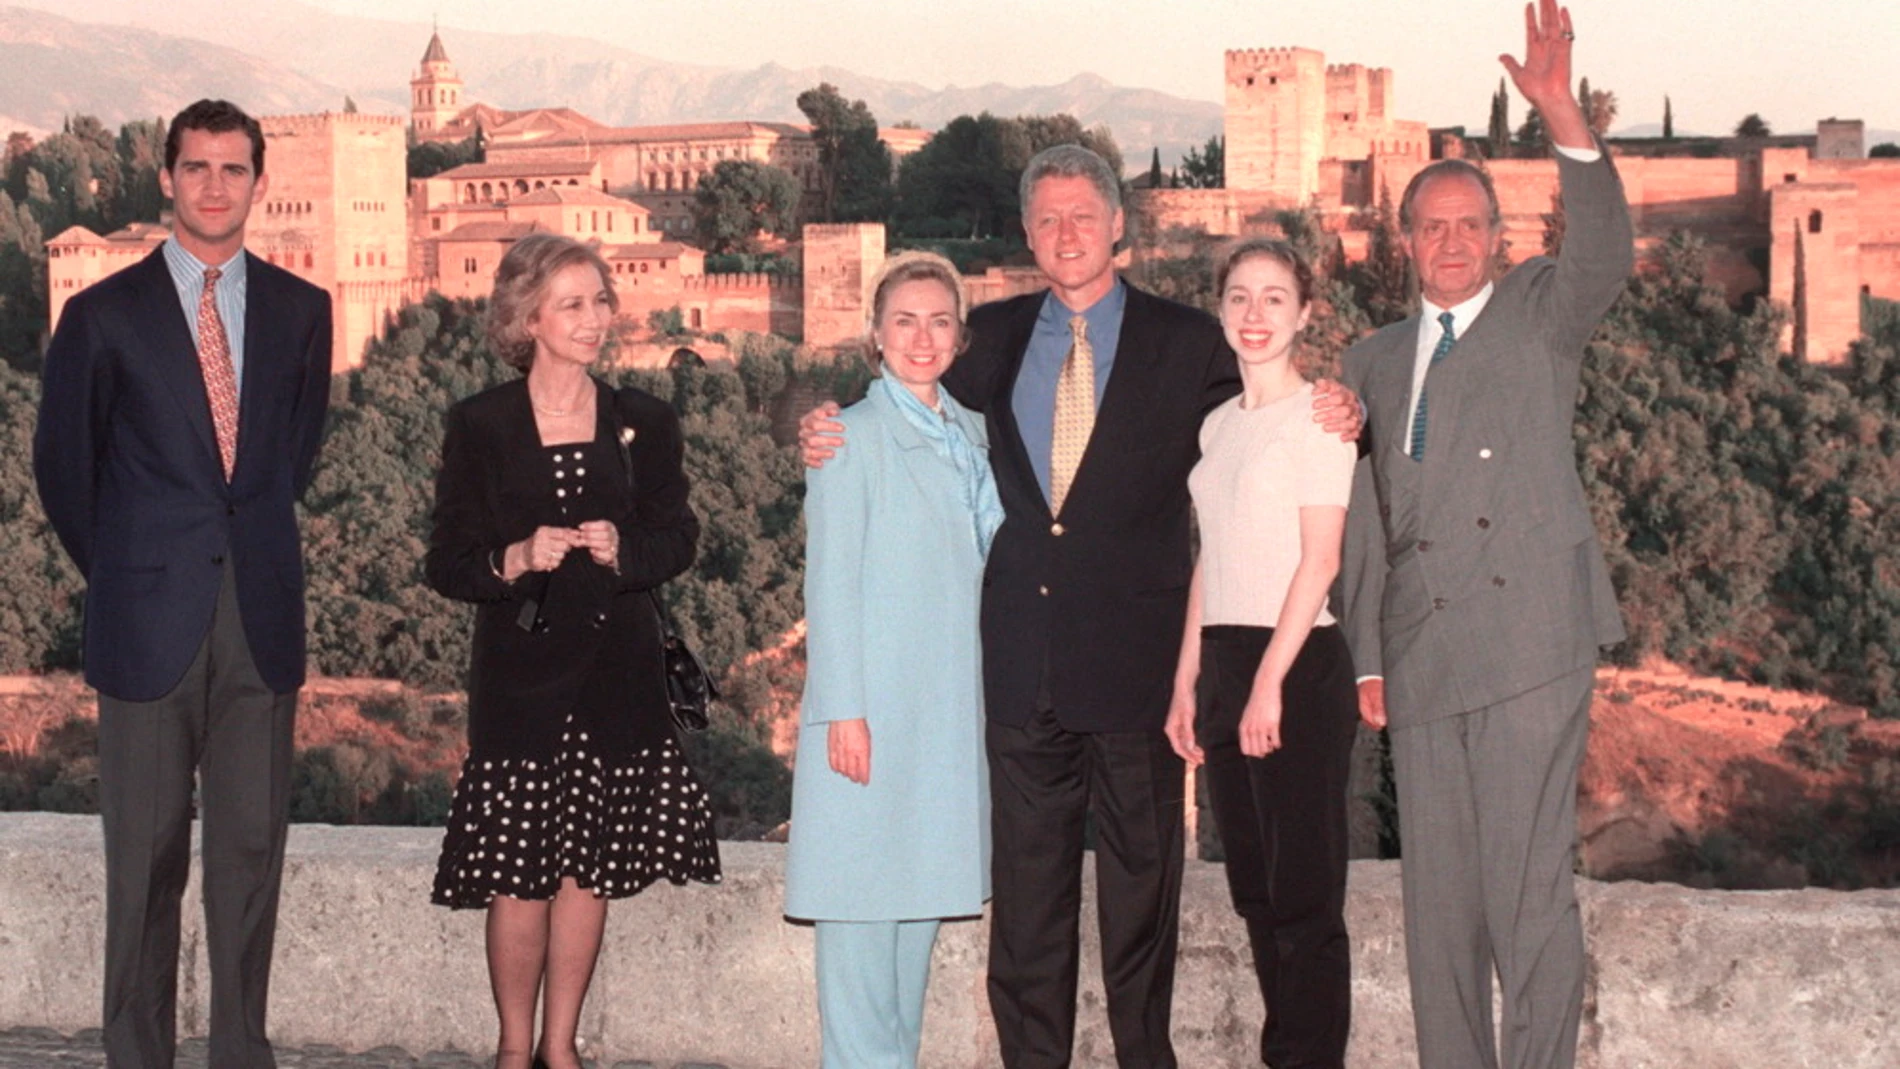 La familia Clinton junto a los Reyes y el príncipe de Asturias en la Alhambra de Granada.